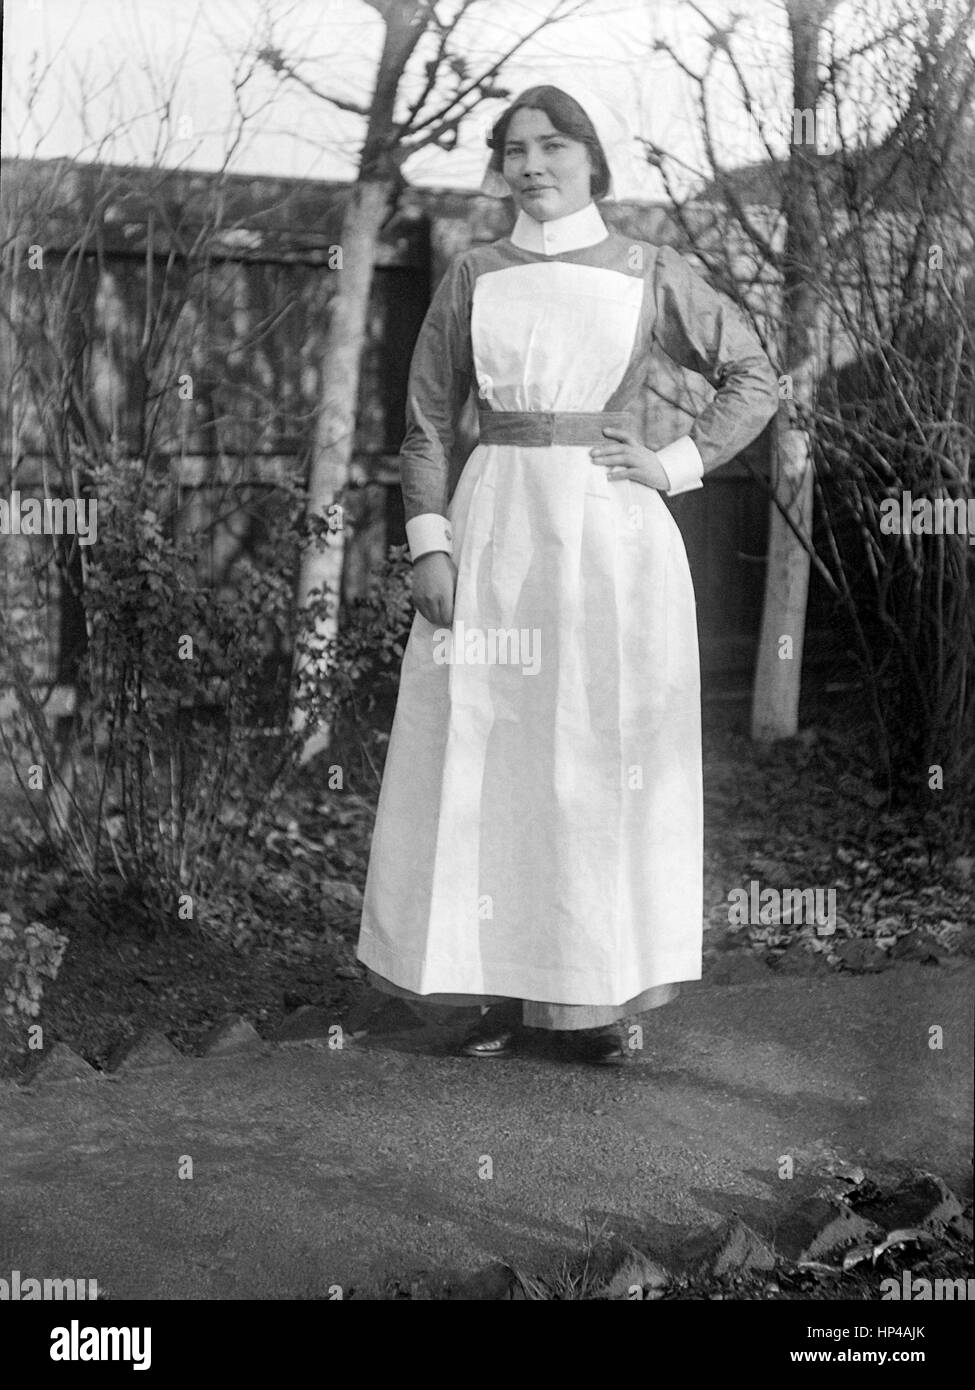 Une jeune dame debout édouardienne sur un chemin près d'une clôture en bois dans un jardin arrière. Elle porte un uniforme de nouvelles infirmières, peut-être St Johns Ambulance Brigade, sans insigne..restauré à partir d'une numérisation haute résolution prises à partir de l'original Edwardian négatif. Image prise vers 1910 Banque D'Images